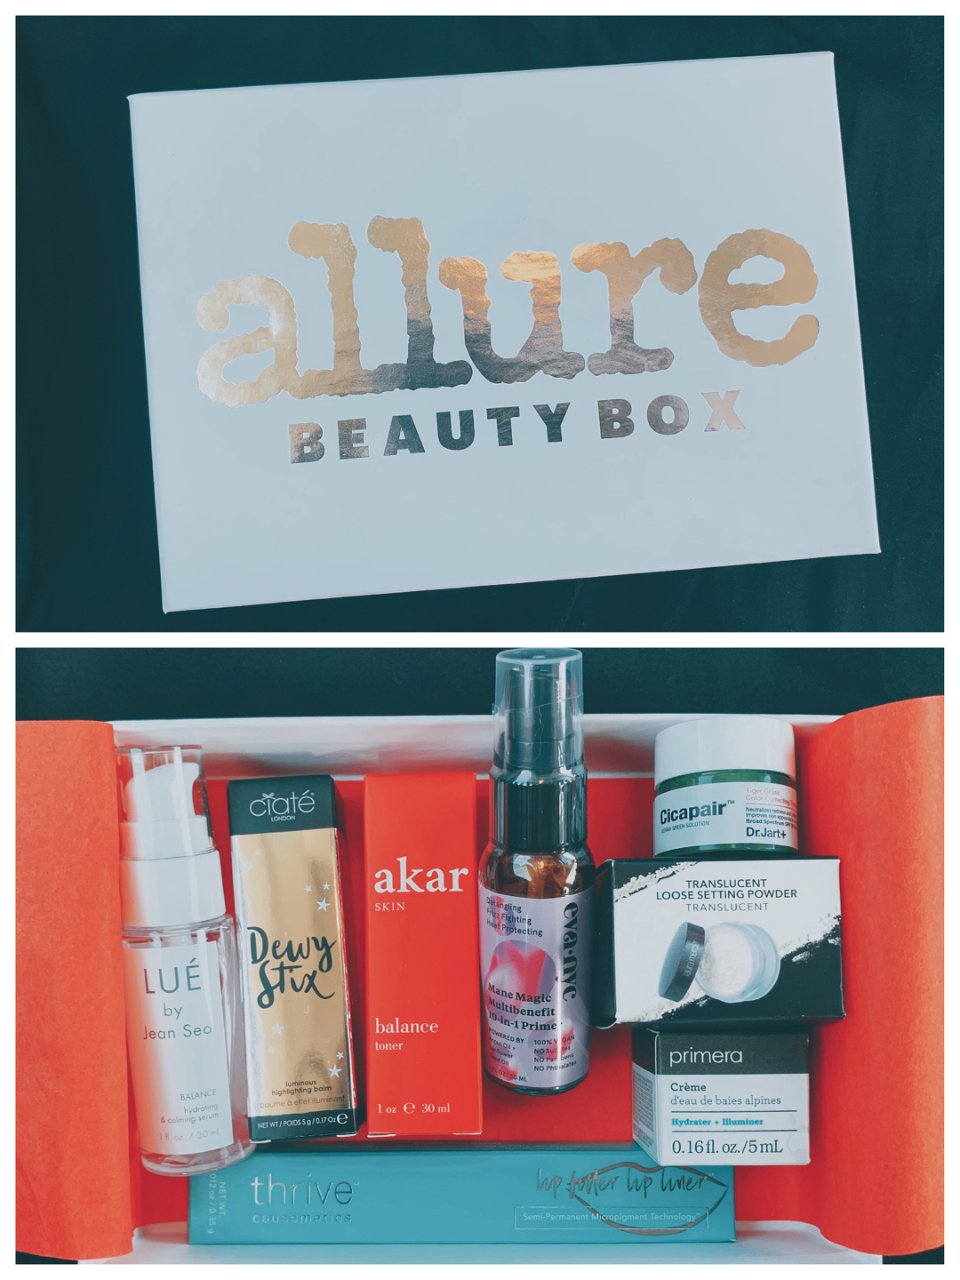 Allure Beauty Box,allure